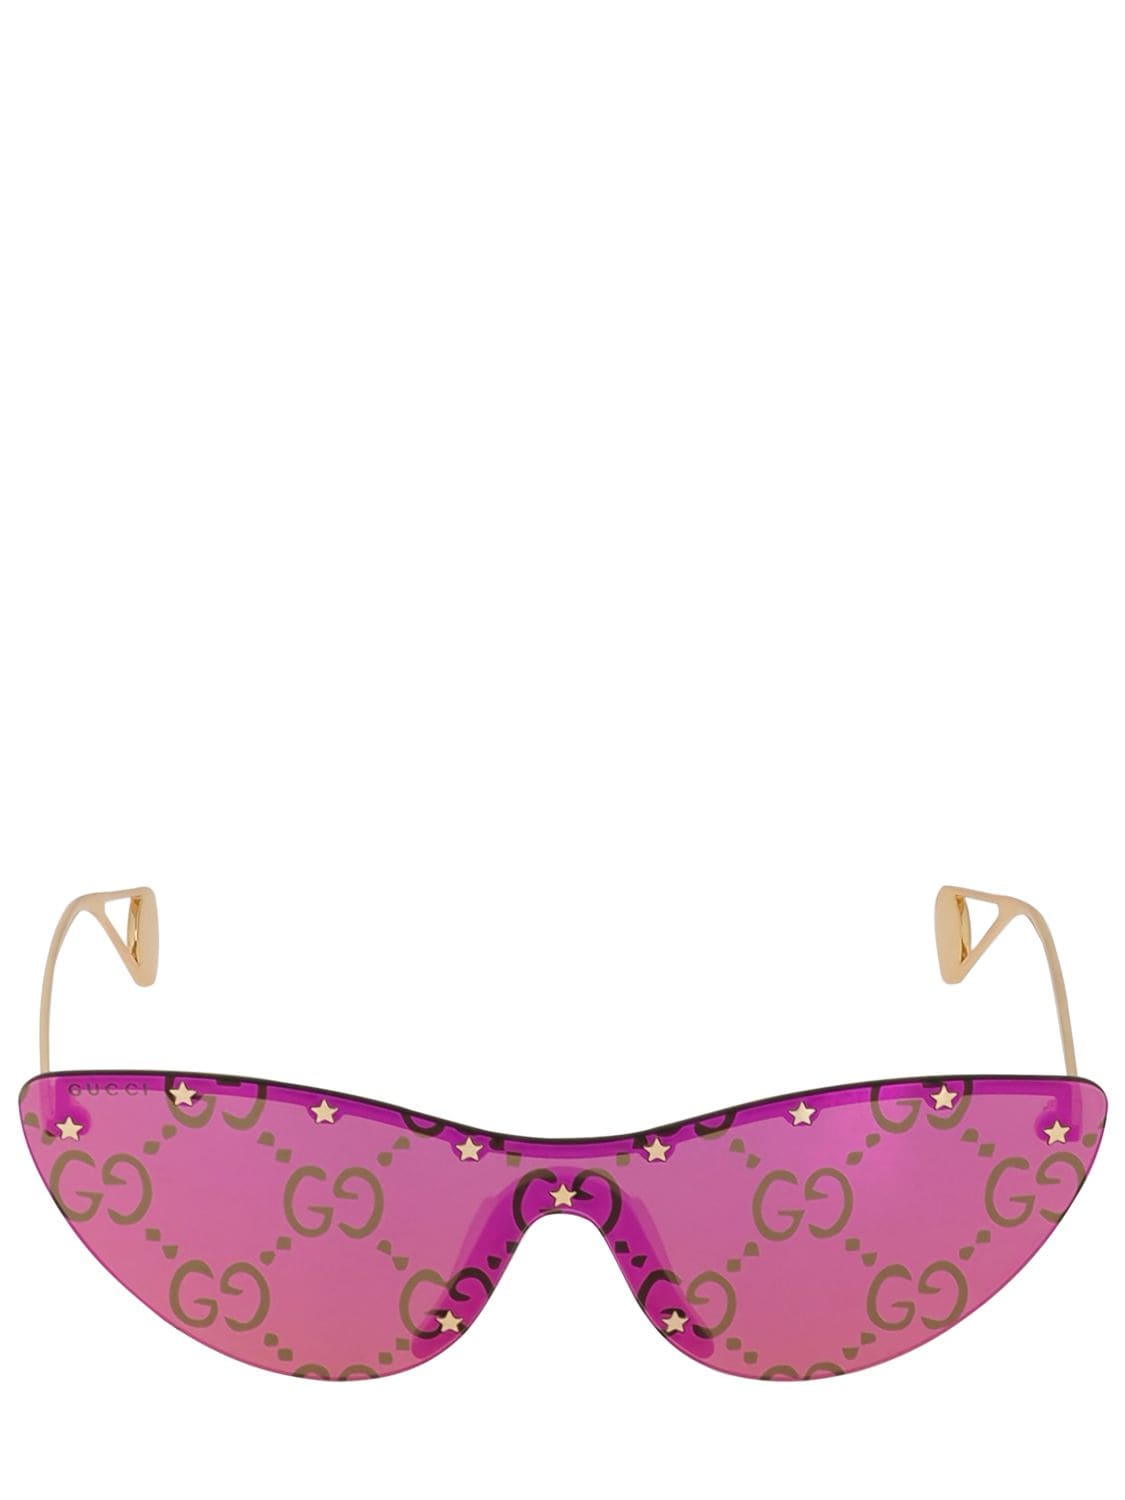 Gucci Gg Monogram Mirrored Cat Eye Sunglasses In Multicolor